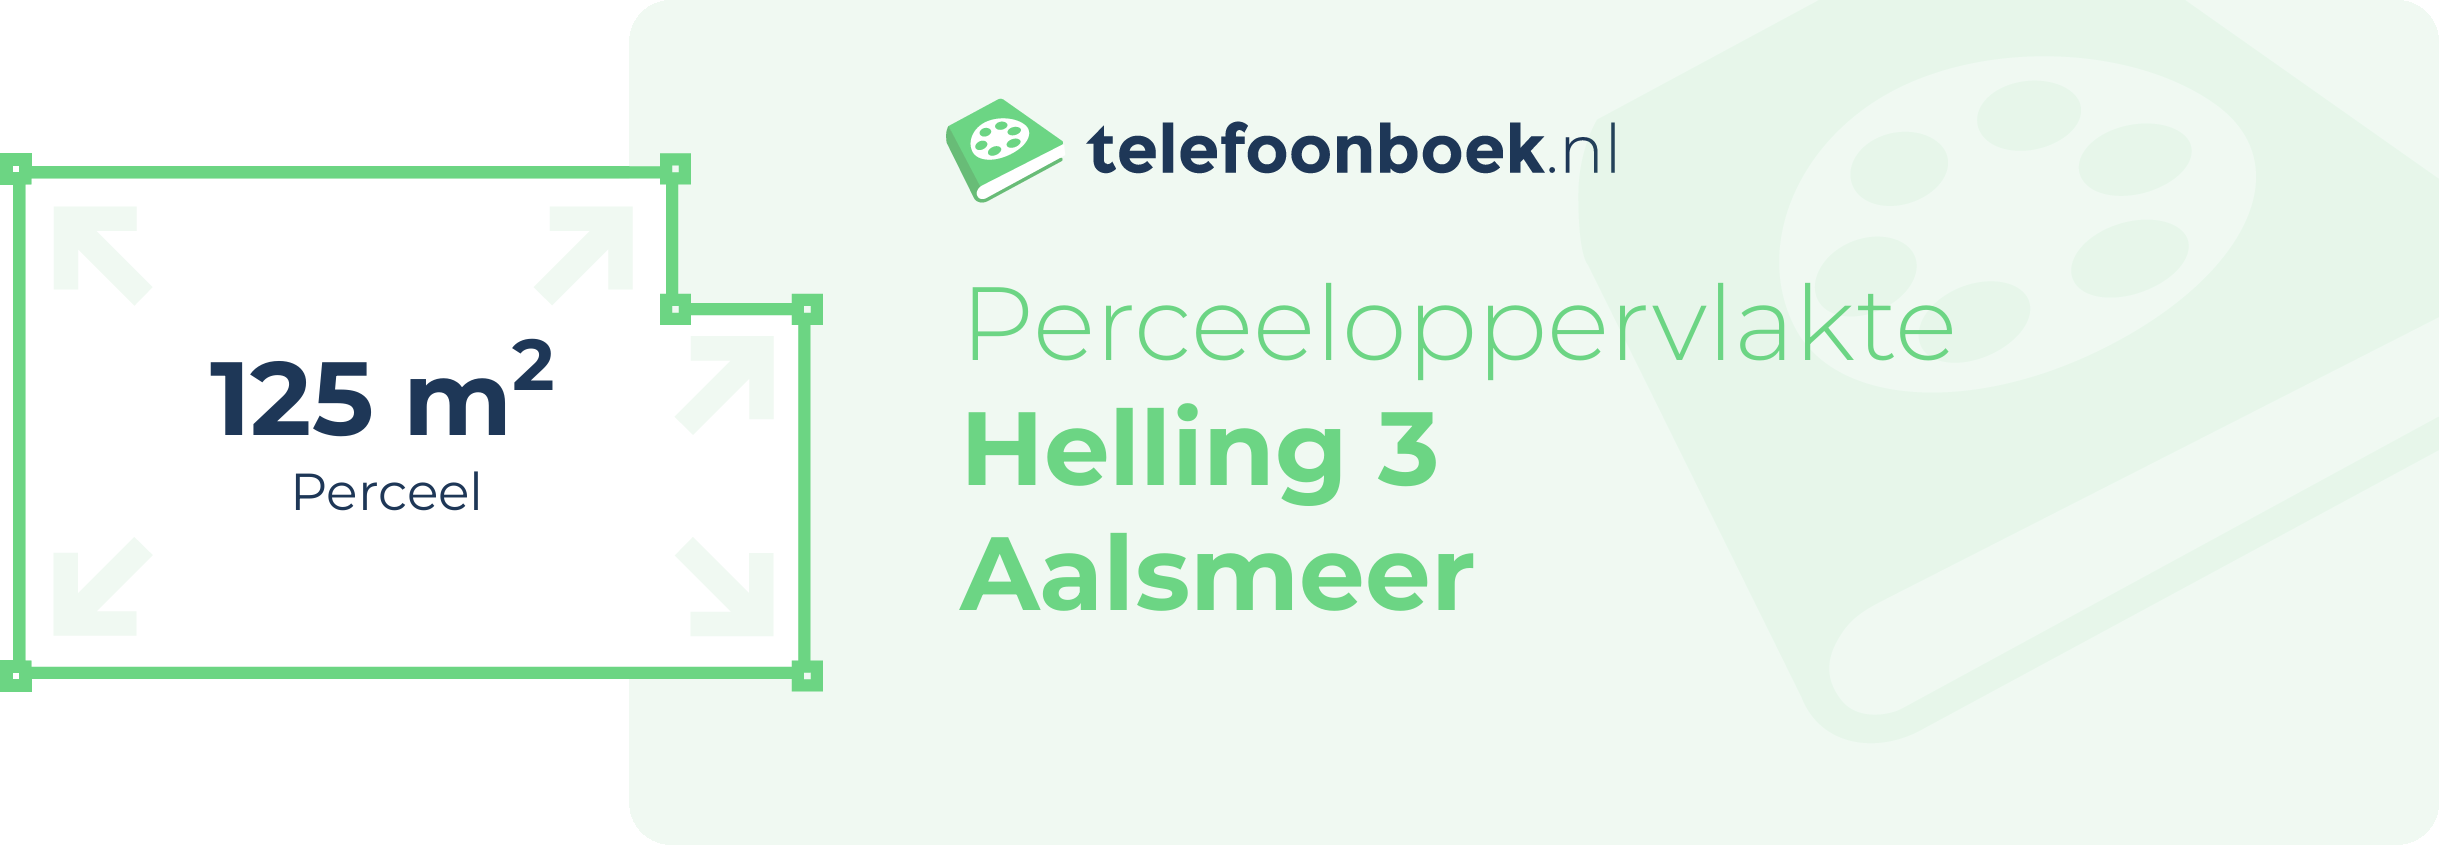 Perceeloppervlakte Helling 3 Aalsmeer